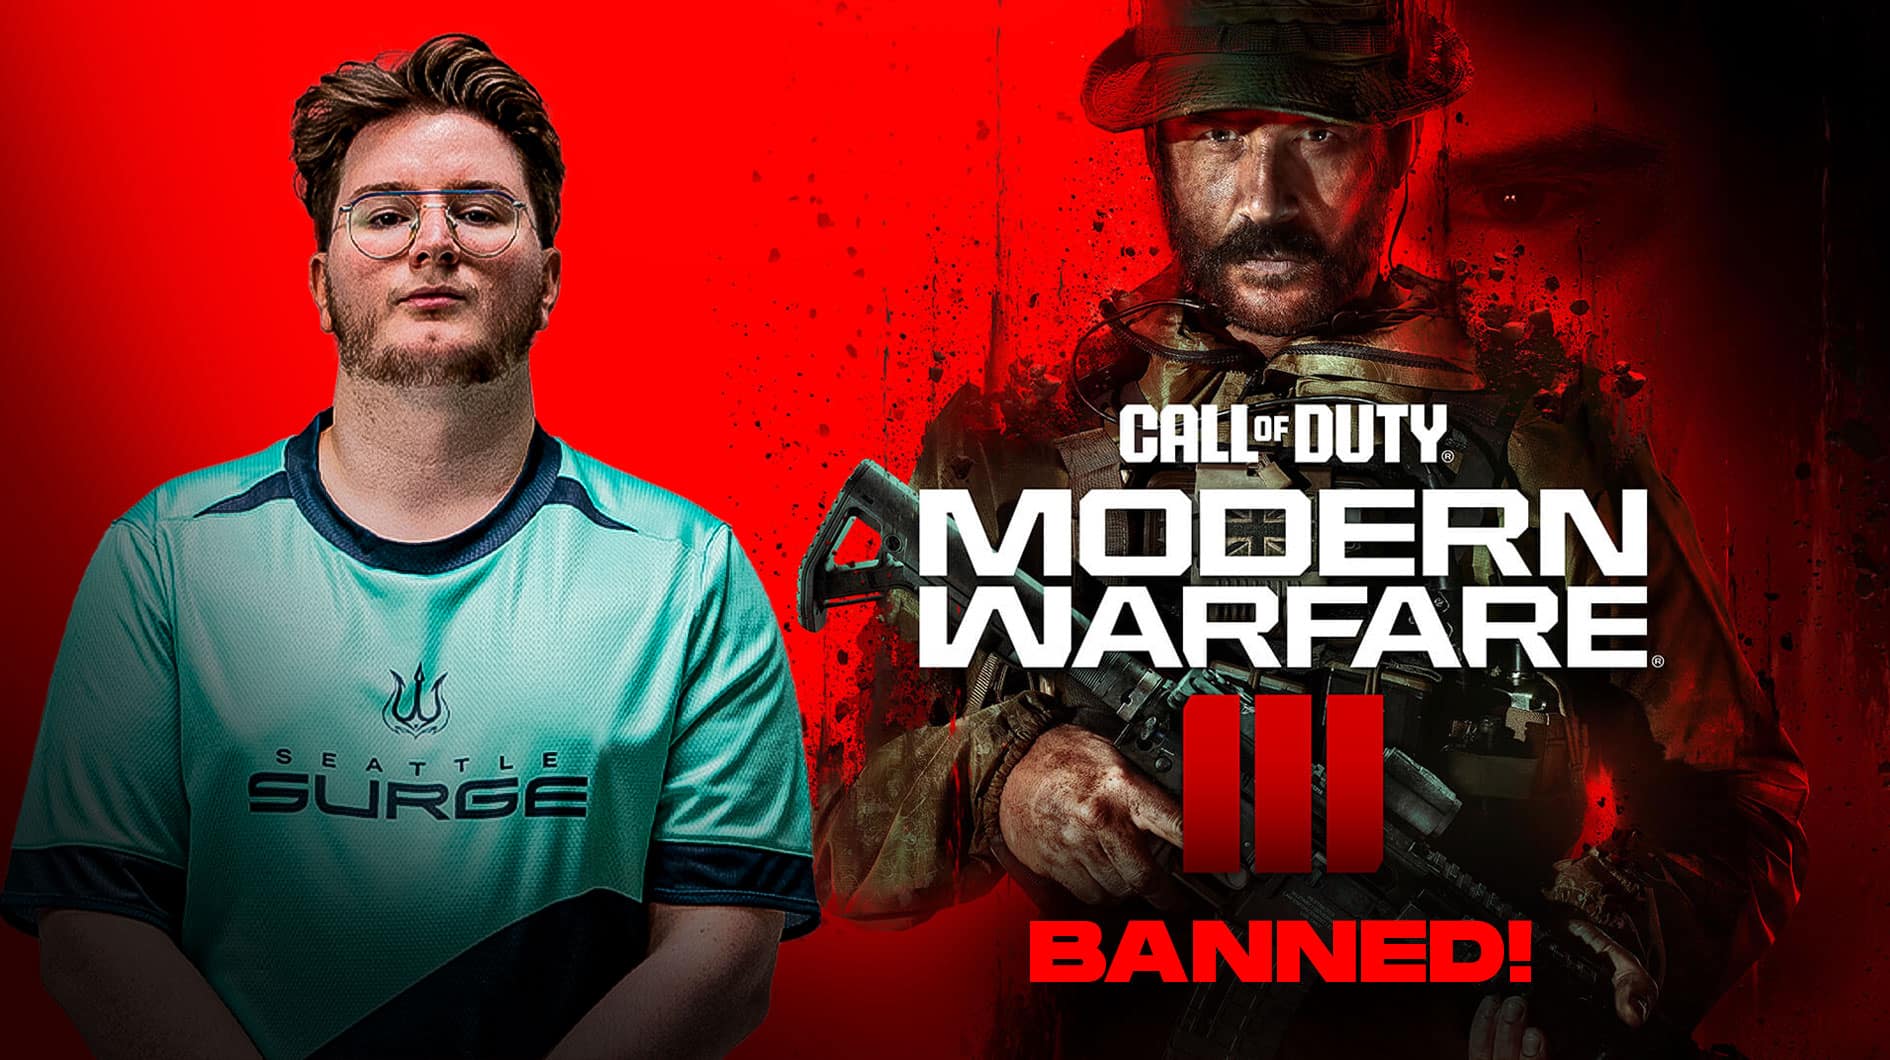 Call Of Duty банит профессионального игрока Абузу за «незаконные инструменты»